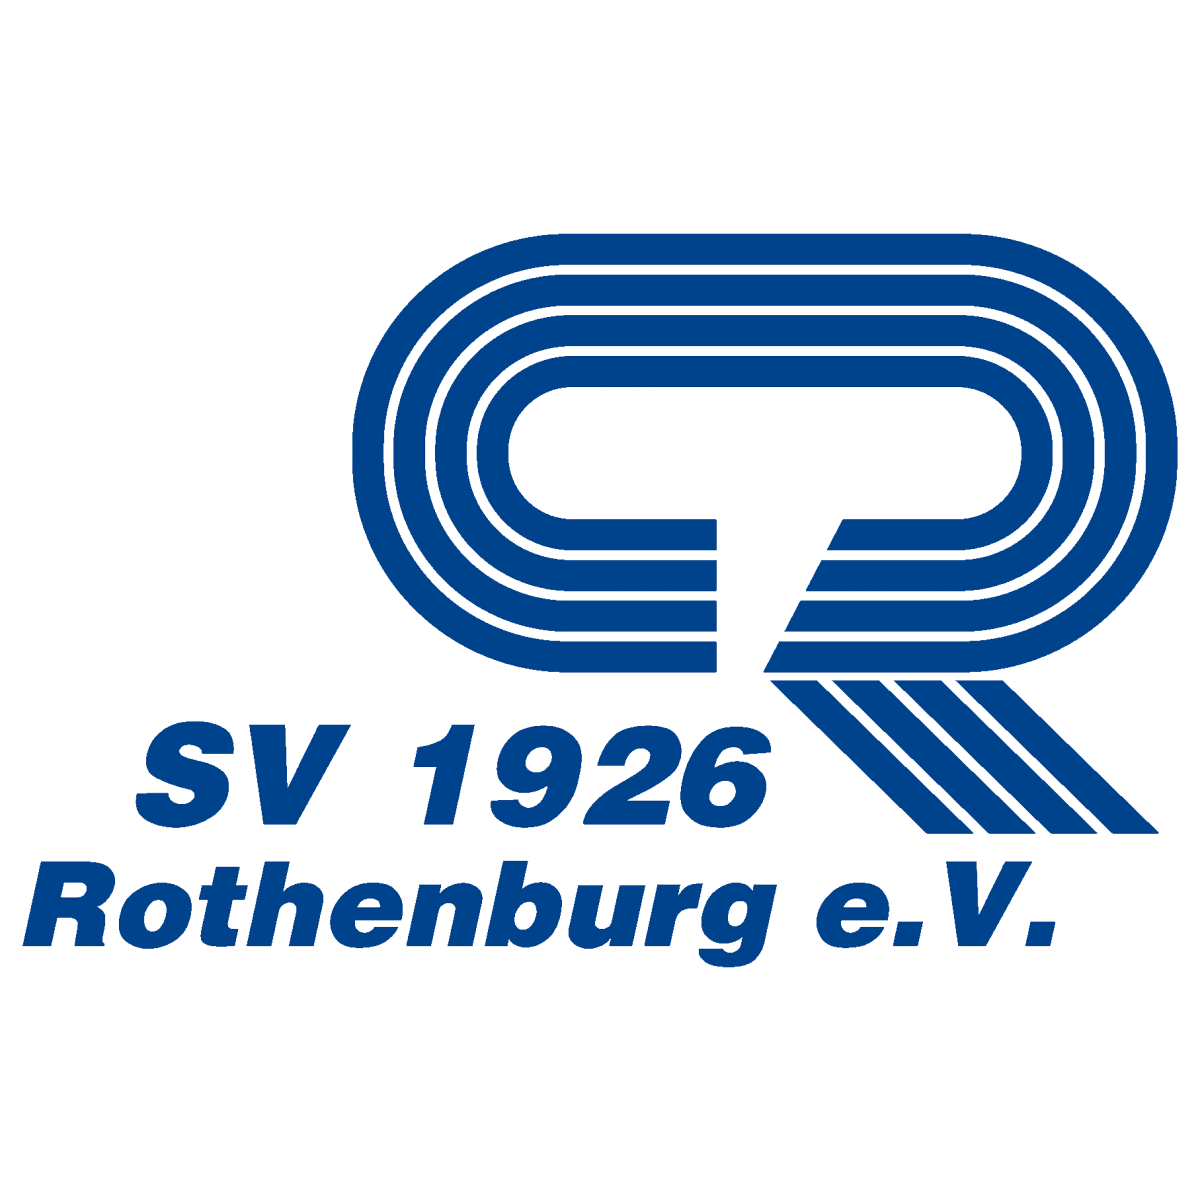 SV 1926 Rothenburg e.V.